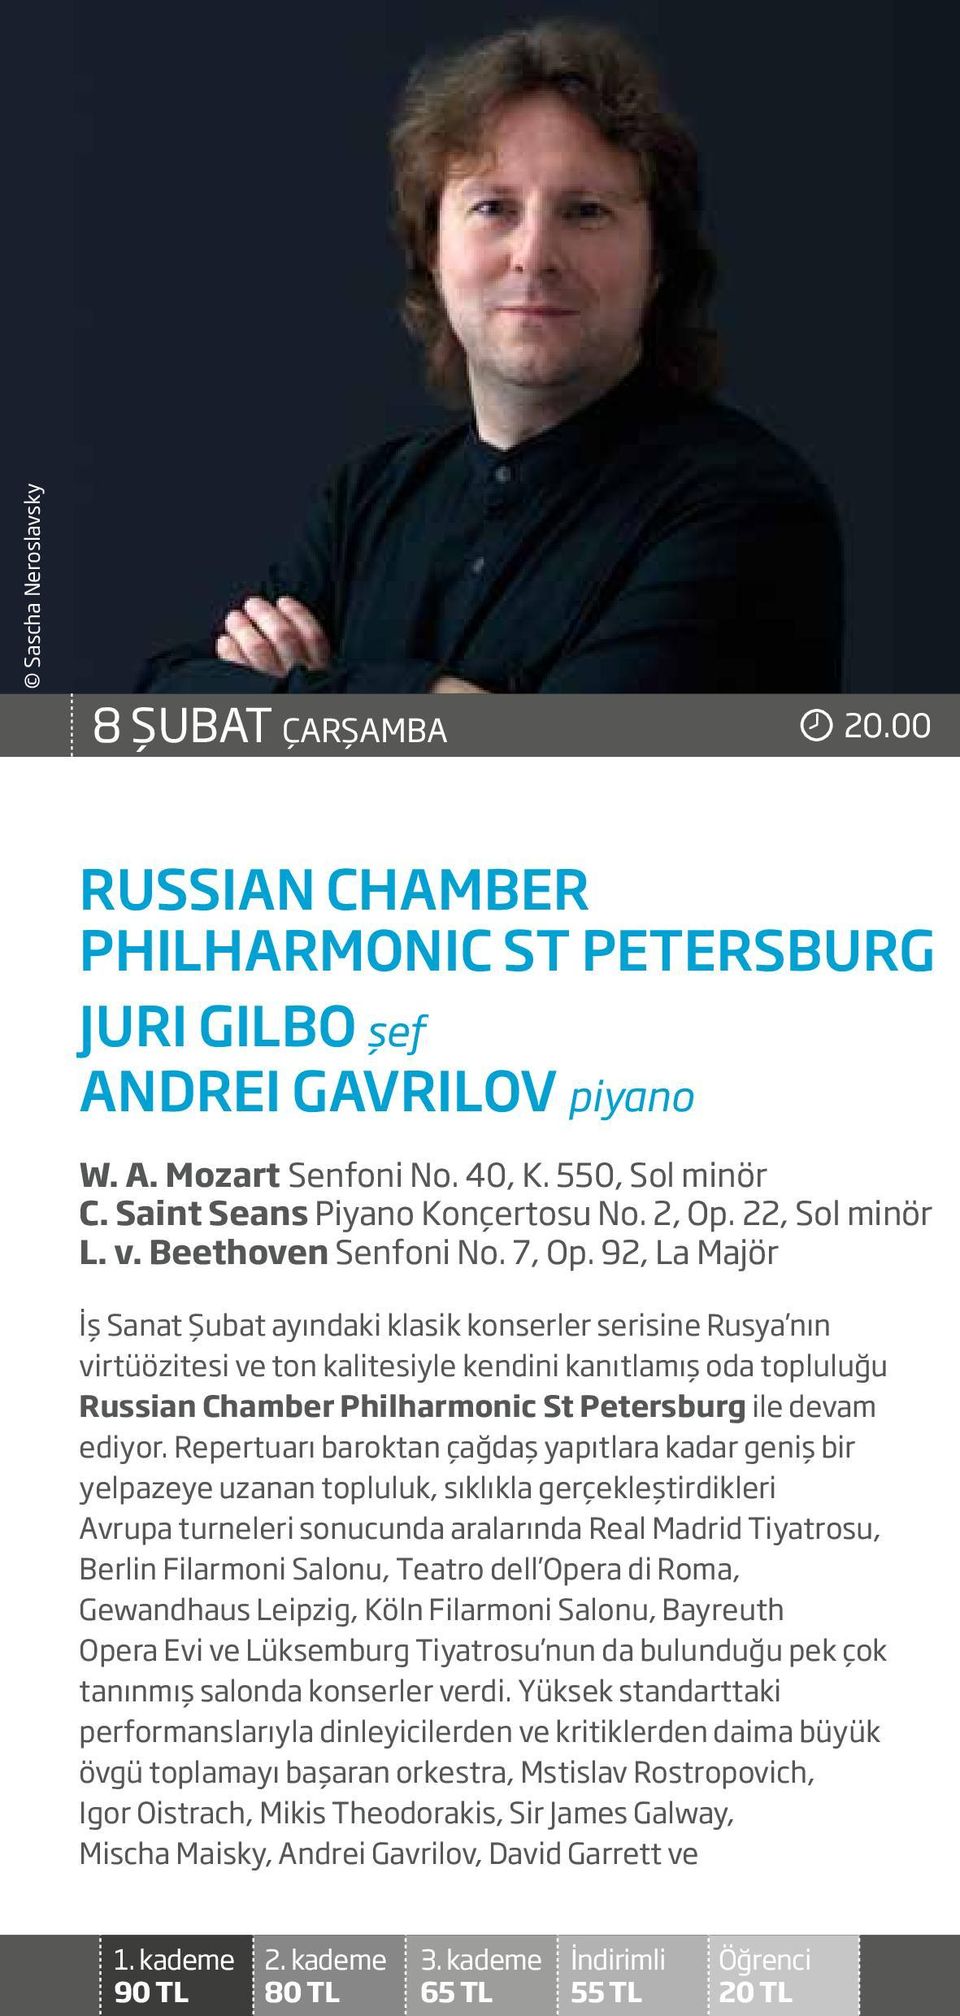 92, La Majör İş Sanat Şubat ayındaki klasik konserler serisine Rusya nın virtüözitesi ve ton kalitesiyle kendini kanıtlamış oda topluluğu Russian Chamber Philharmonic St Petersburg ile devam ediyor.